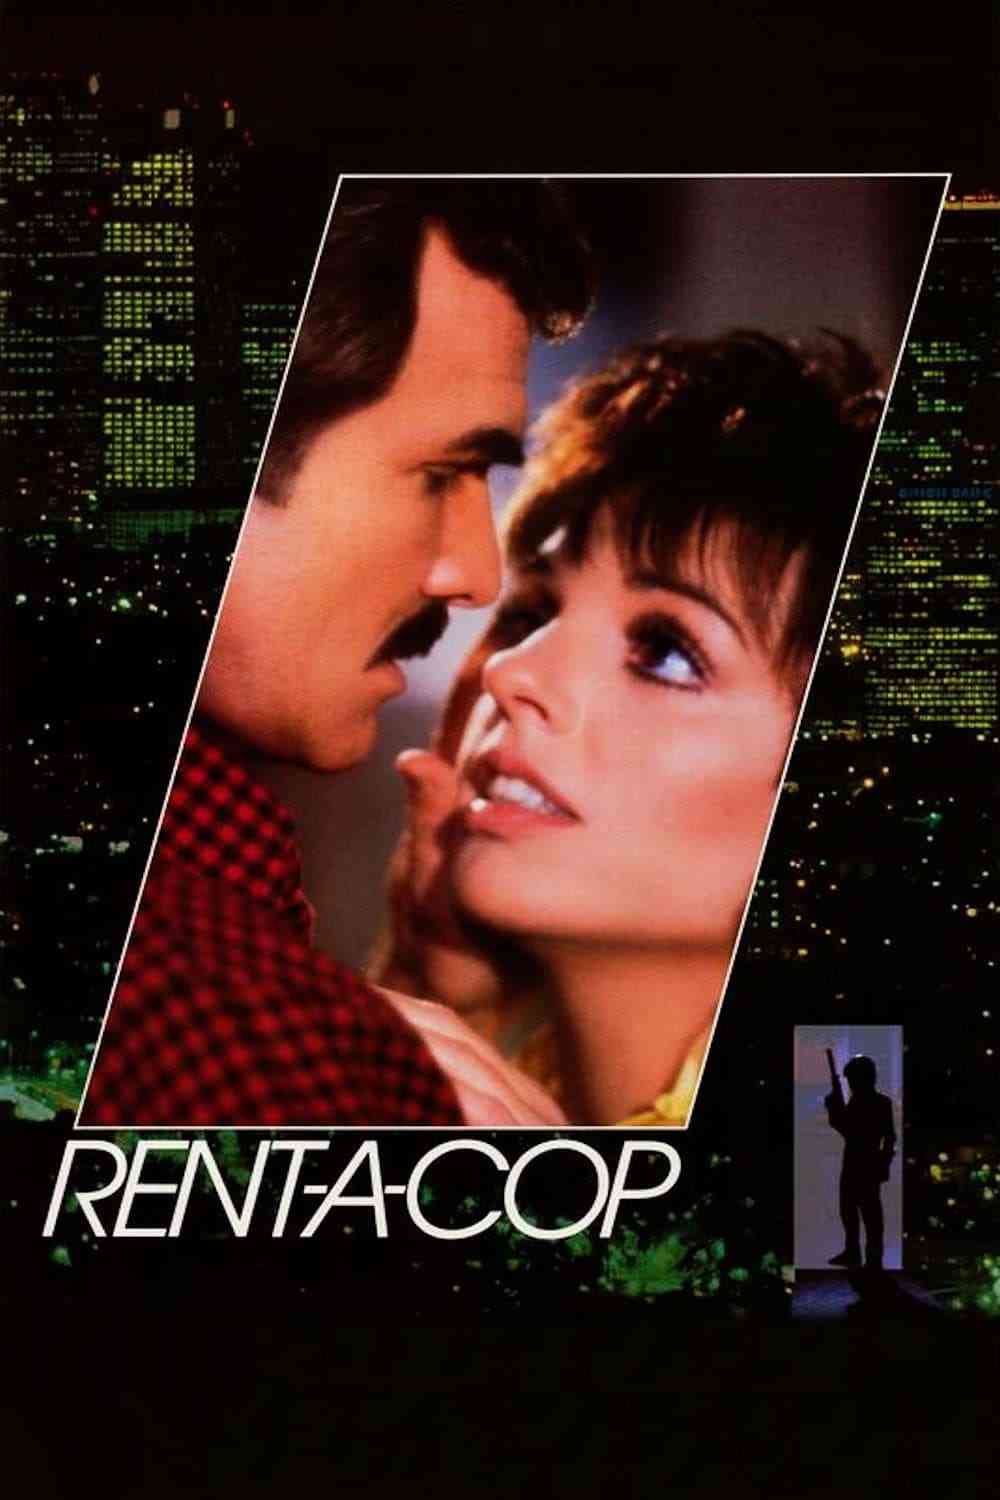 Gliniarz do wynajęcia   Rent-a-Cop  (1987),Online za darmo